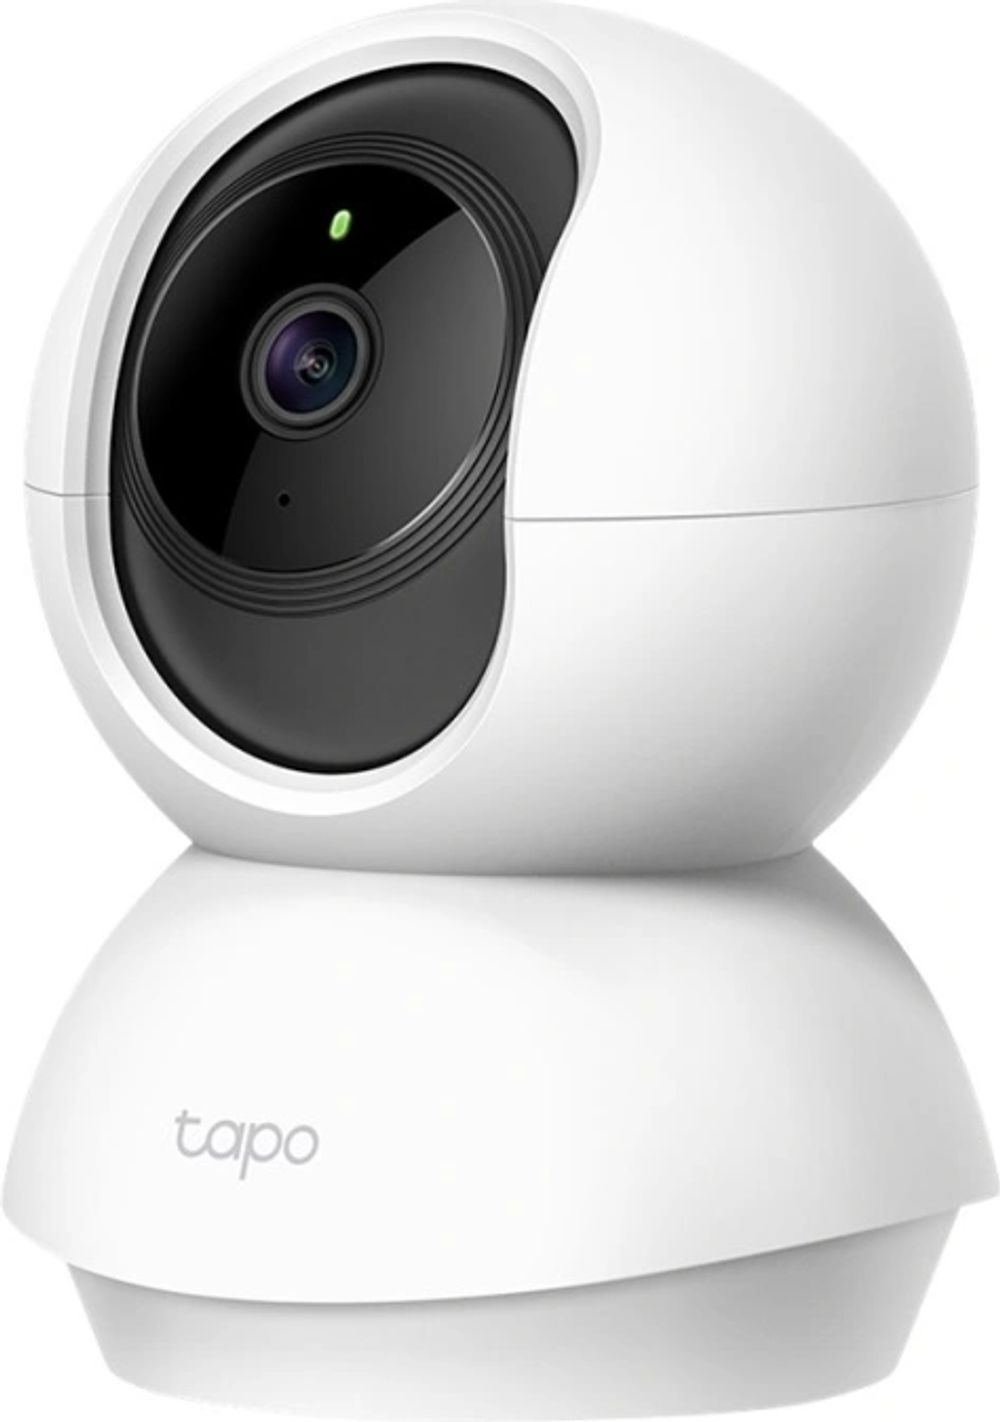 Tilbud på Tapo C200 - Netværksovervågningskamera - panonering / hældningsvinkel - farve (Dag/nat) - 1920 x 1080 - 1080p - fast brændvidde - audio - trådløs - Wi fra ComputerSalg til 212 kr.